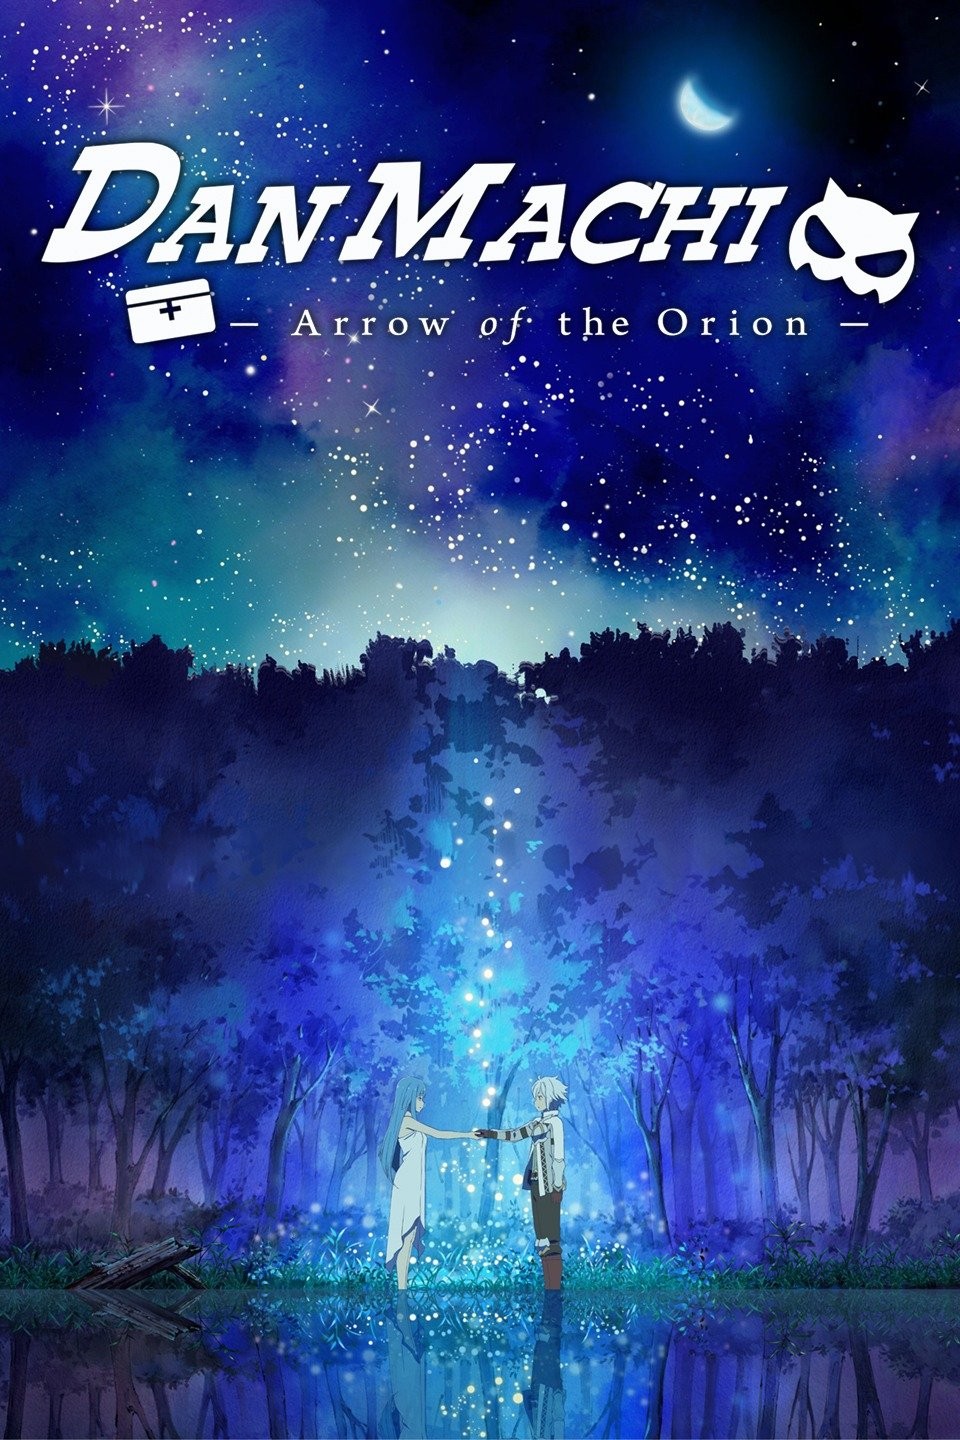 DanMachi: Arrow of the Orion - Filme chega à Netflix brasileira na próxima  sexta-feira - Crunchyroll Notícias